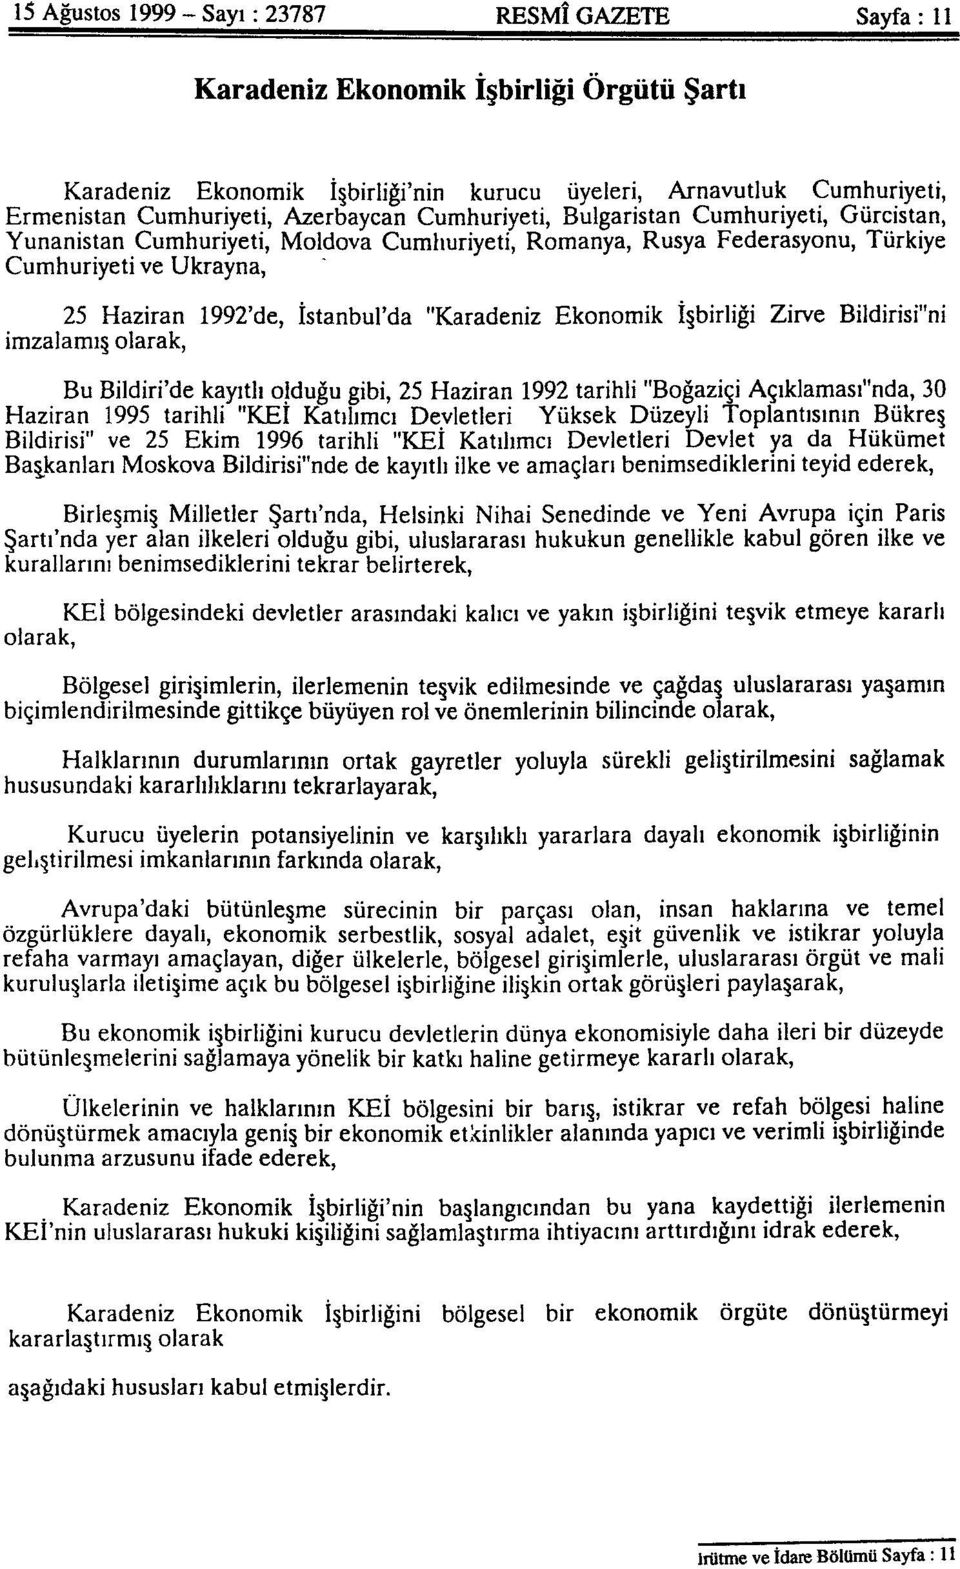 "Karadeniz Ekonomik İşbirliği Zirve Bildirisi"ni imzalamış olarak, Bu Bildiri'de kayıtlı olduğu gibi, 25 Haziran 1992 tarihli "Boğaziçi Açıklaması"nda, 30 Haziran 1995 tarihli "KEİ Katılımcı